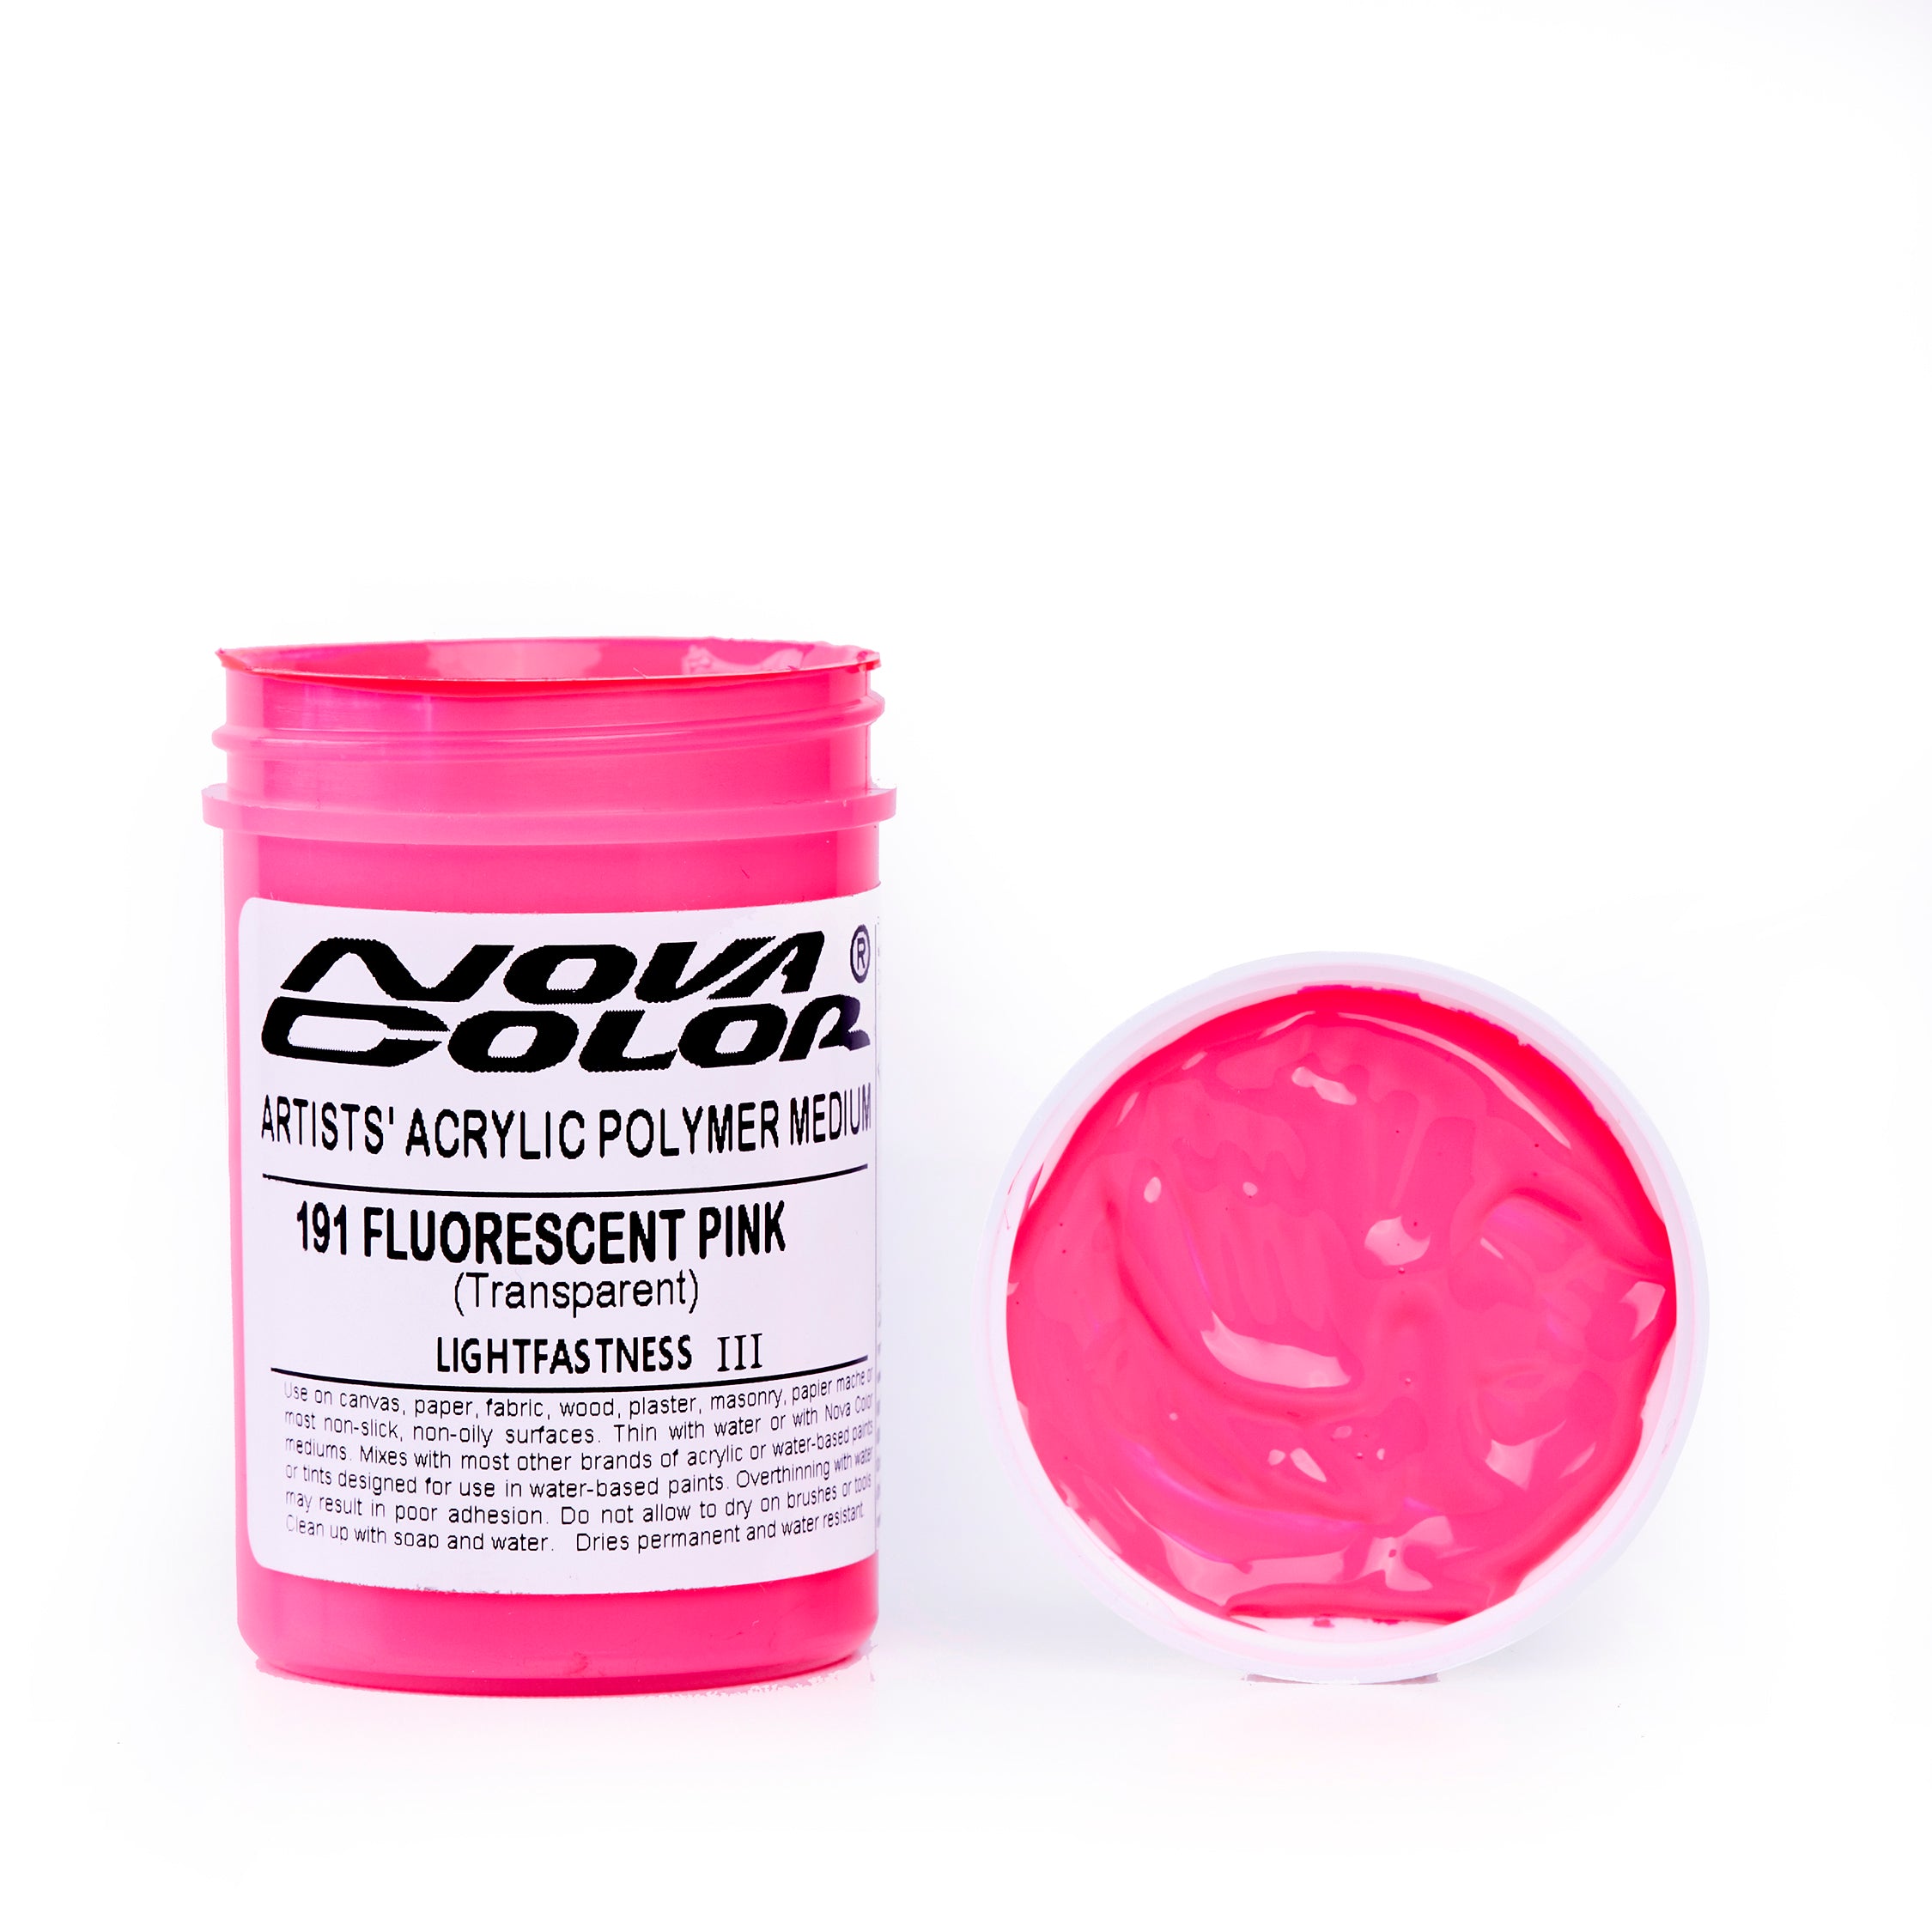 Pink Fluorescent Paint Pigment